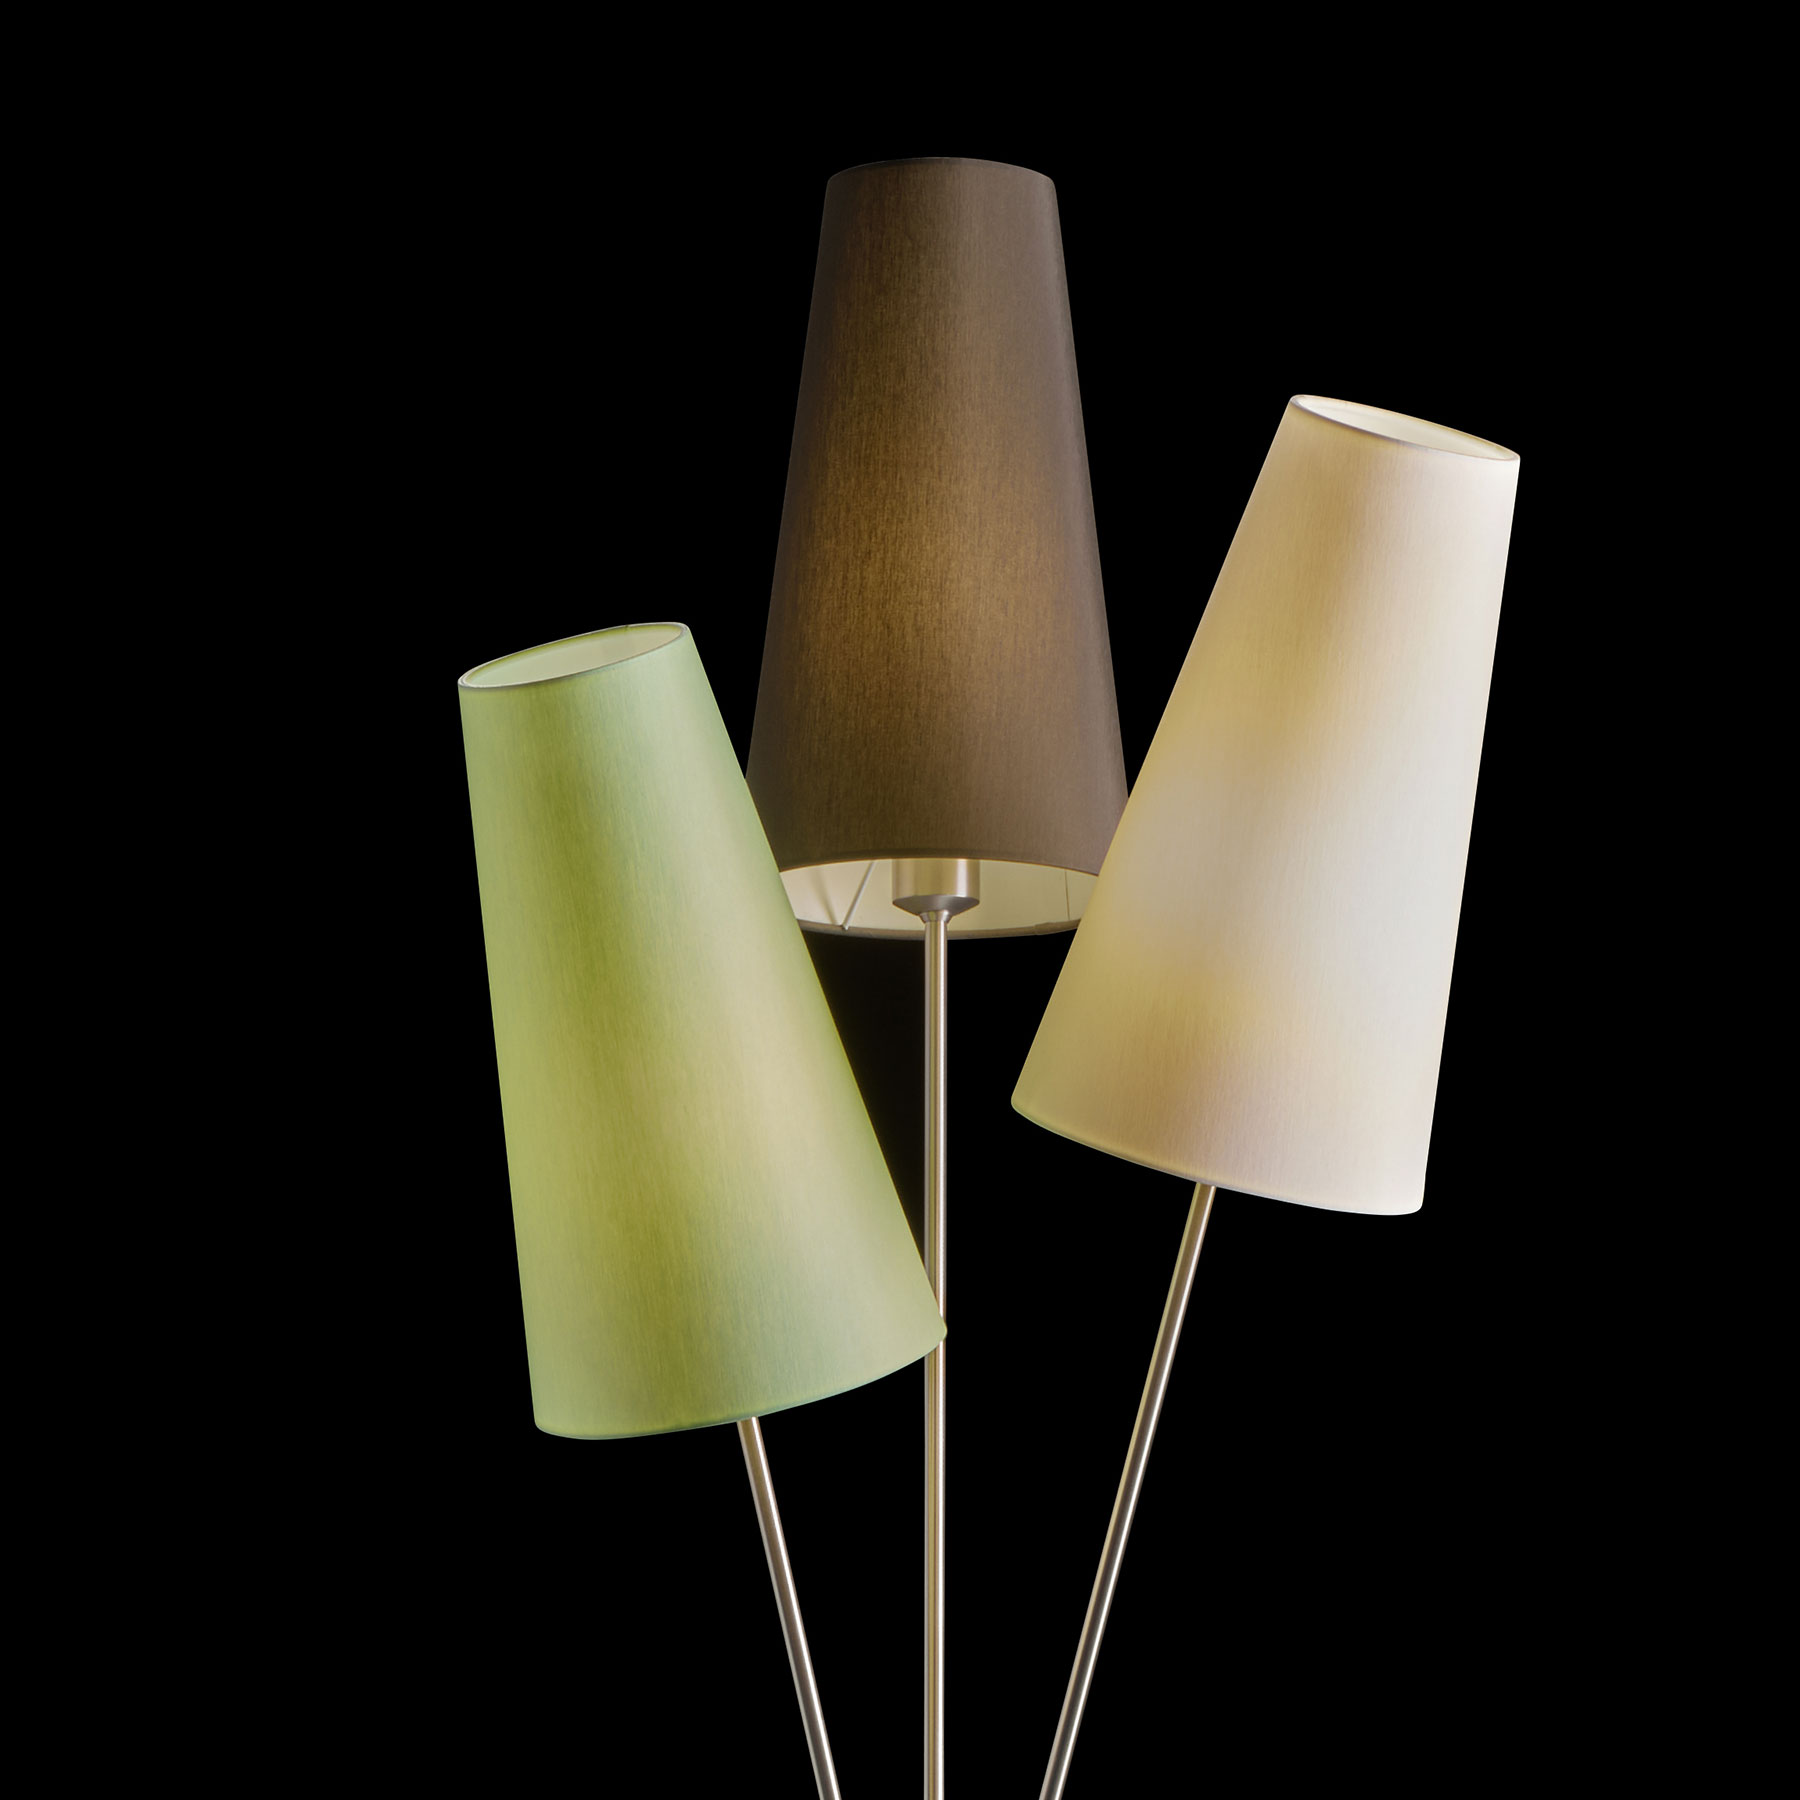 Zweiflammige Stehlampe im 50er Jahre-Look mit Stoffschirmen FIFTIES, viele Farben: Chintz-Schirme Weiß, Schiefer Mint, Gestell in Messing matt vernickelt (BEISPIELBILD vom dreiflammigen Modell)